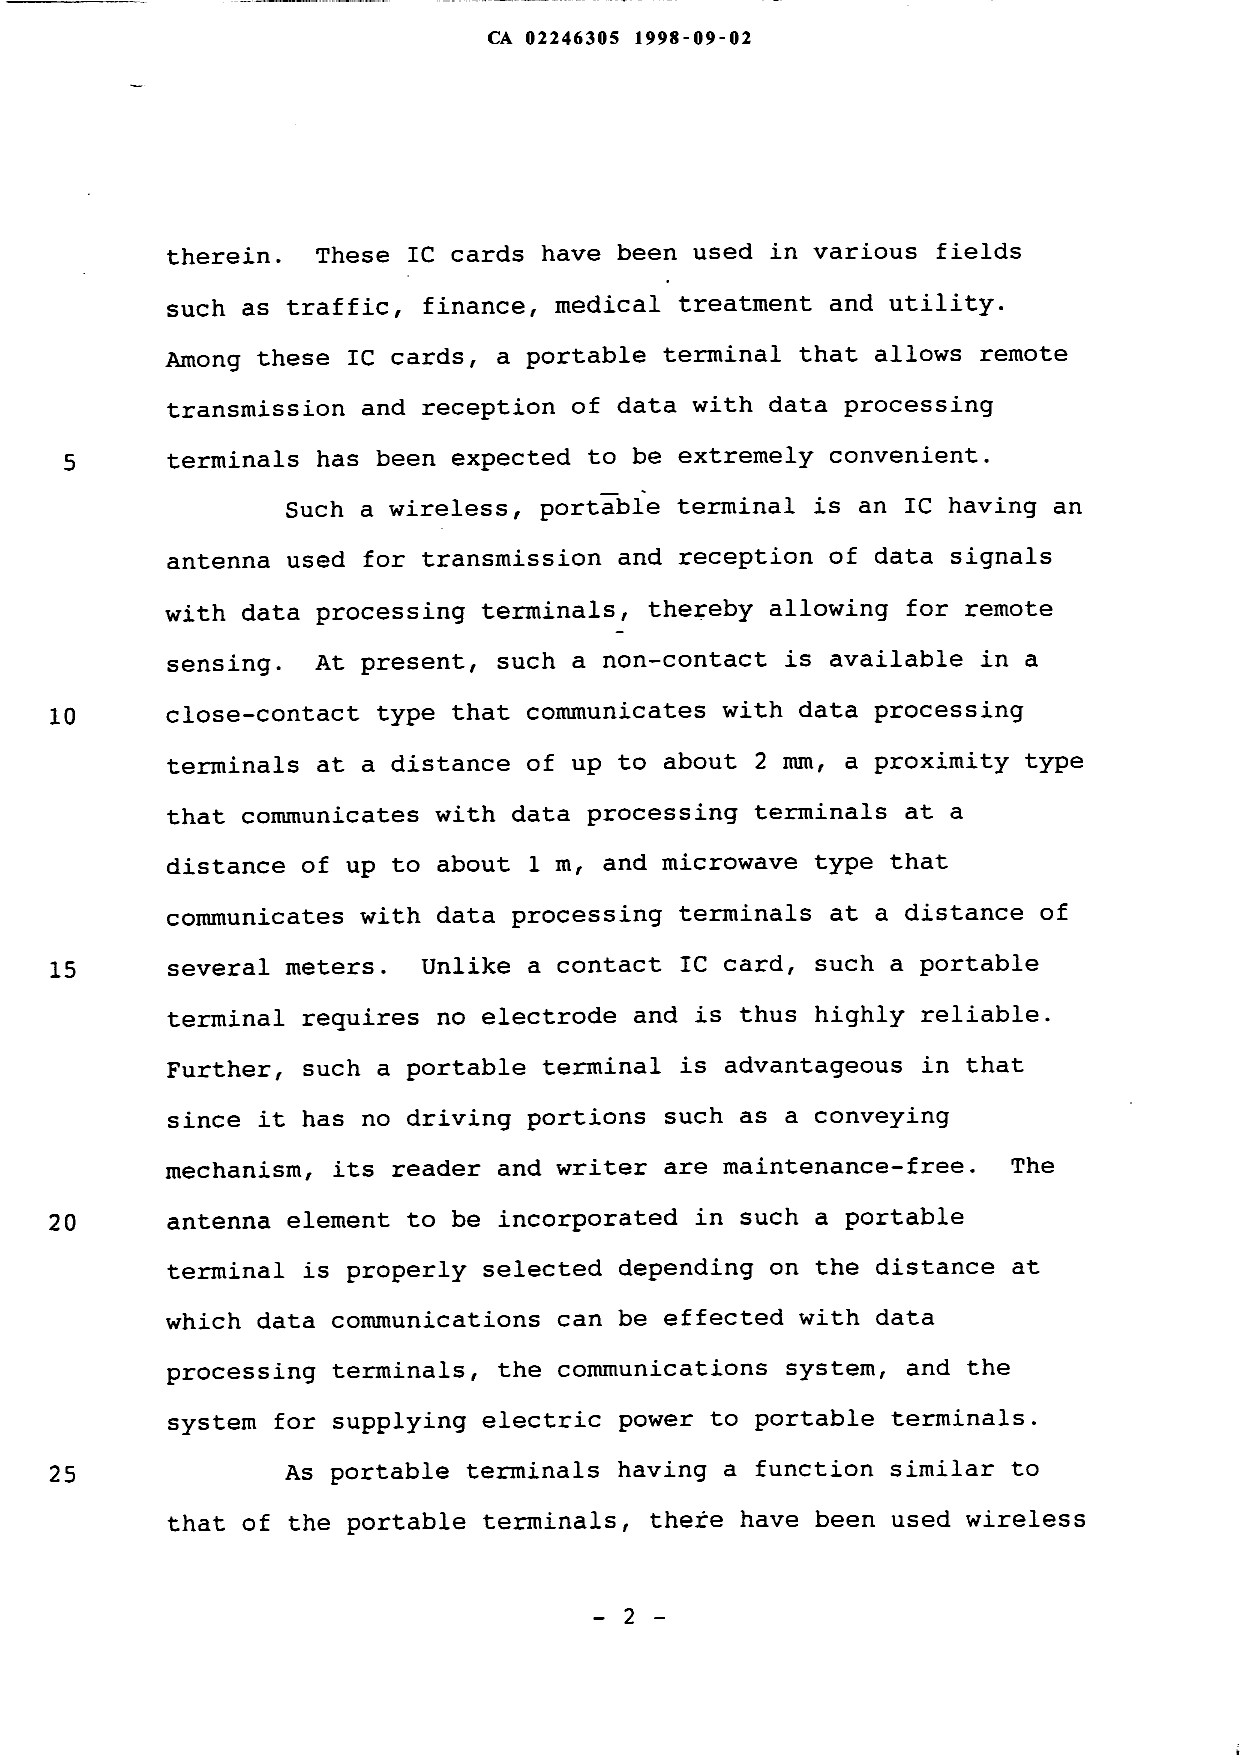 Canadian Patent Document 2246305. Description 19980902. Image 2 of 48